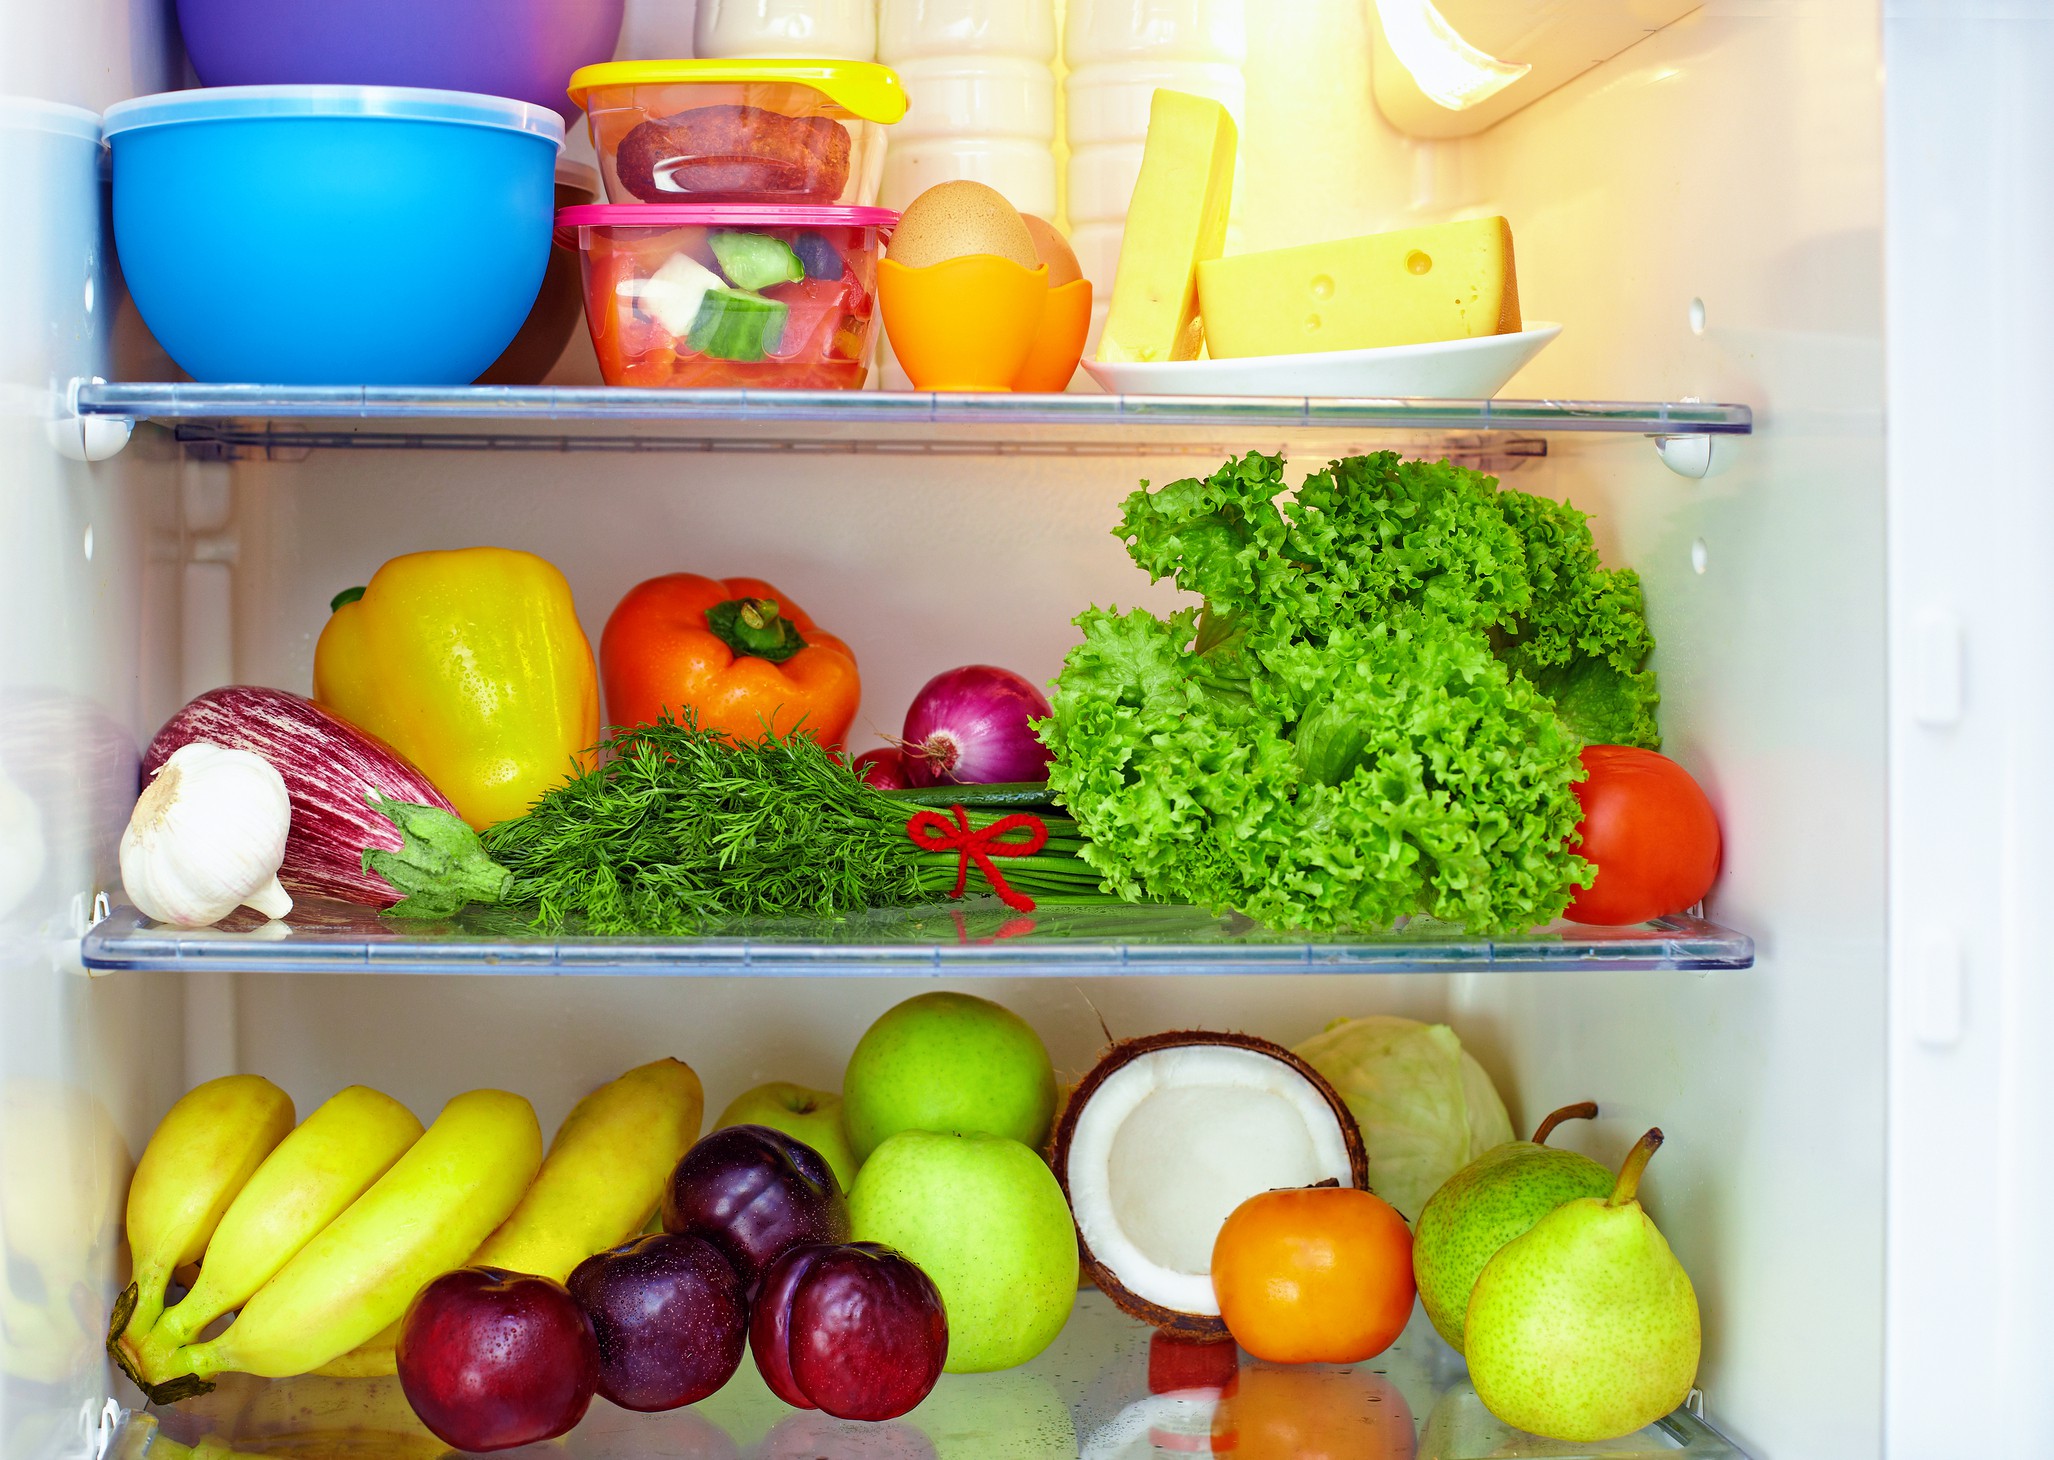 Cum să îți organizezi frigiderul în mod eficient. Sfaturi și trucuri pentru o depozitare corectă a alimentelor